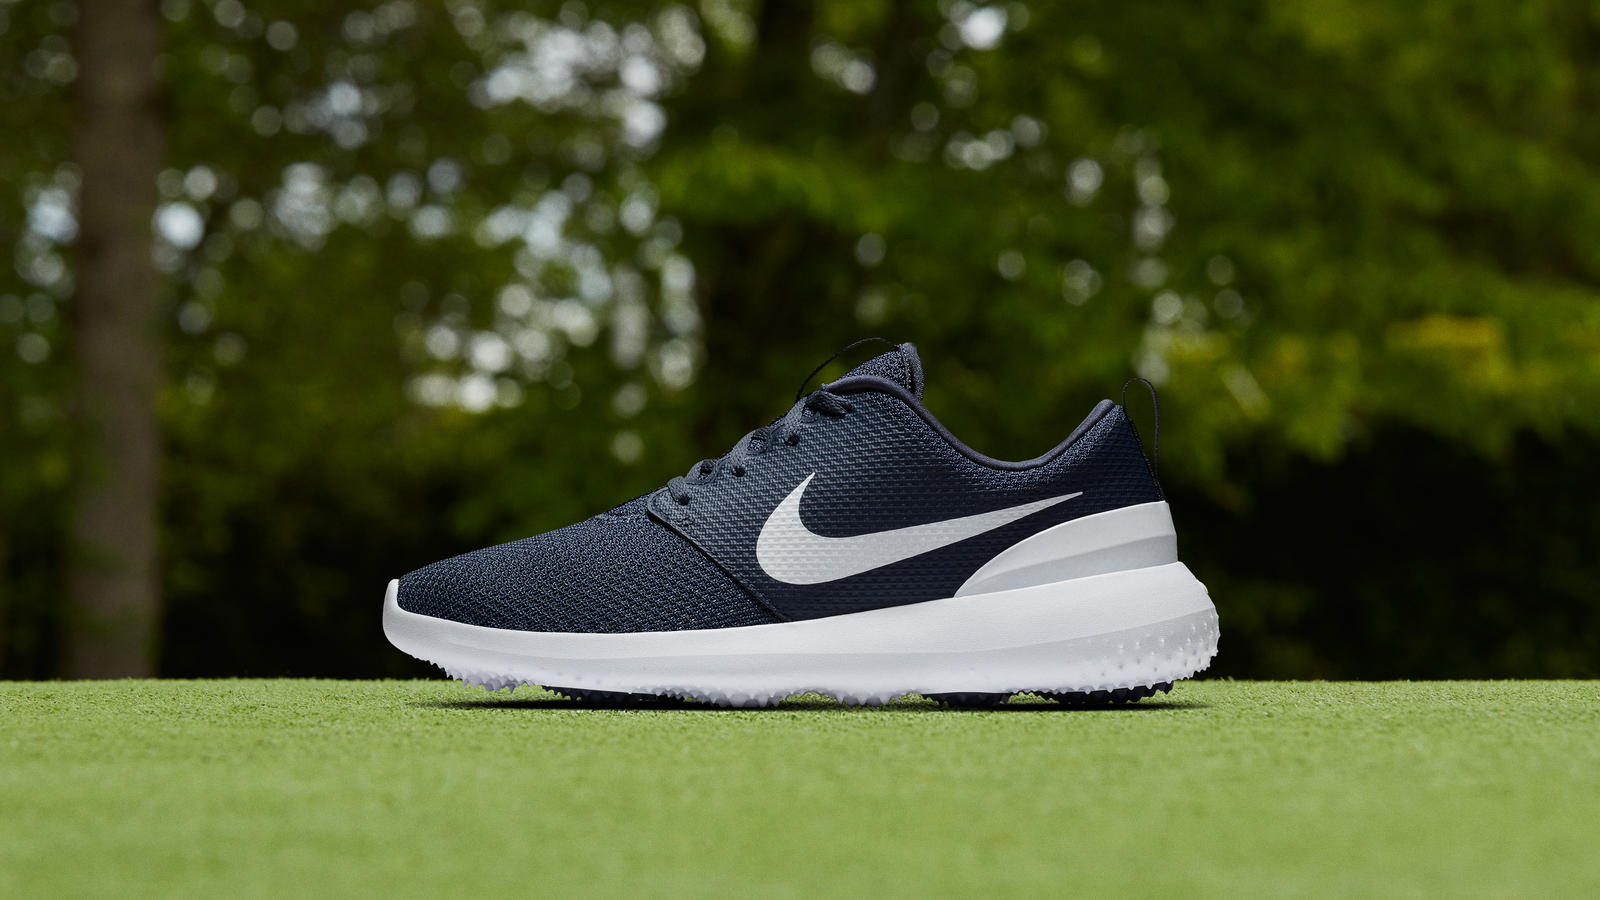 Nike Roshe G - Giày golf giá rẻ nhưng được golfer đánh giá rất cao